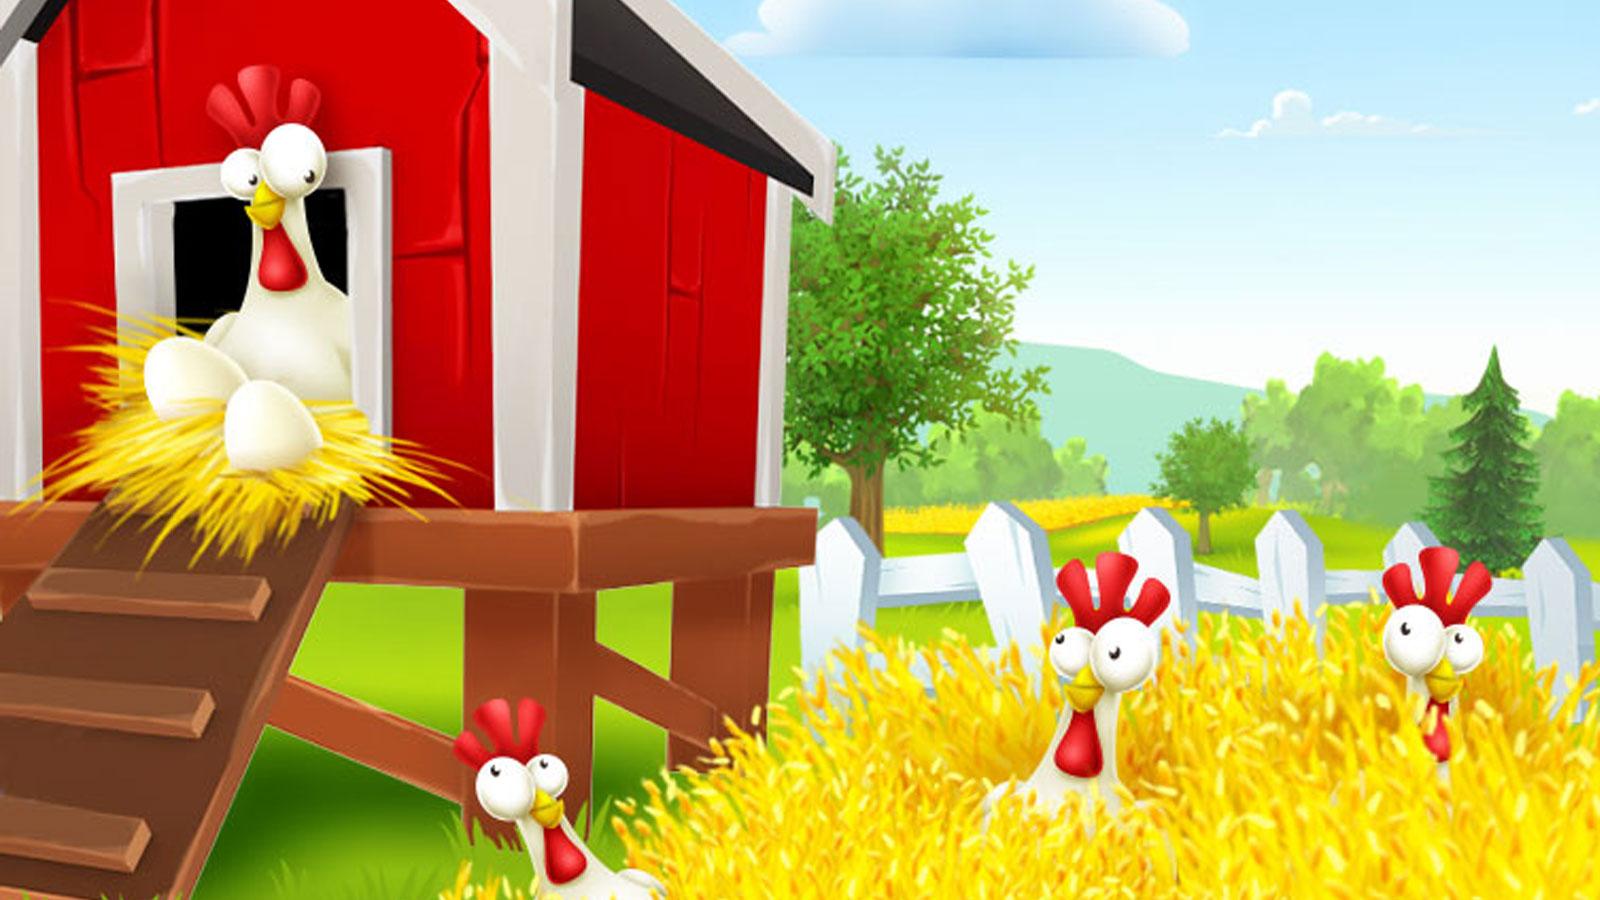 Ферма хаю даю. Ферма Хэй Дэй. Hay Day курица. НАУ дау ферма. Курица из Хэй Дэй.